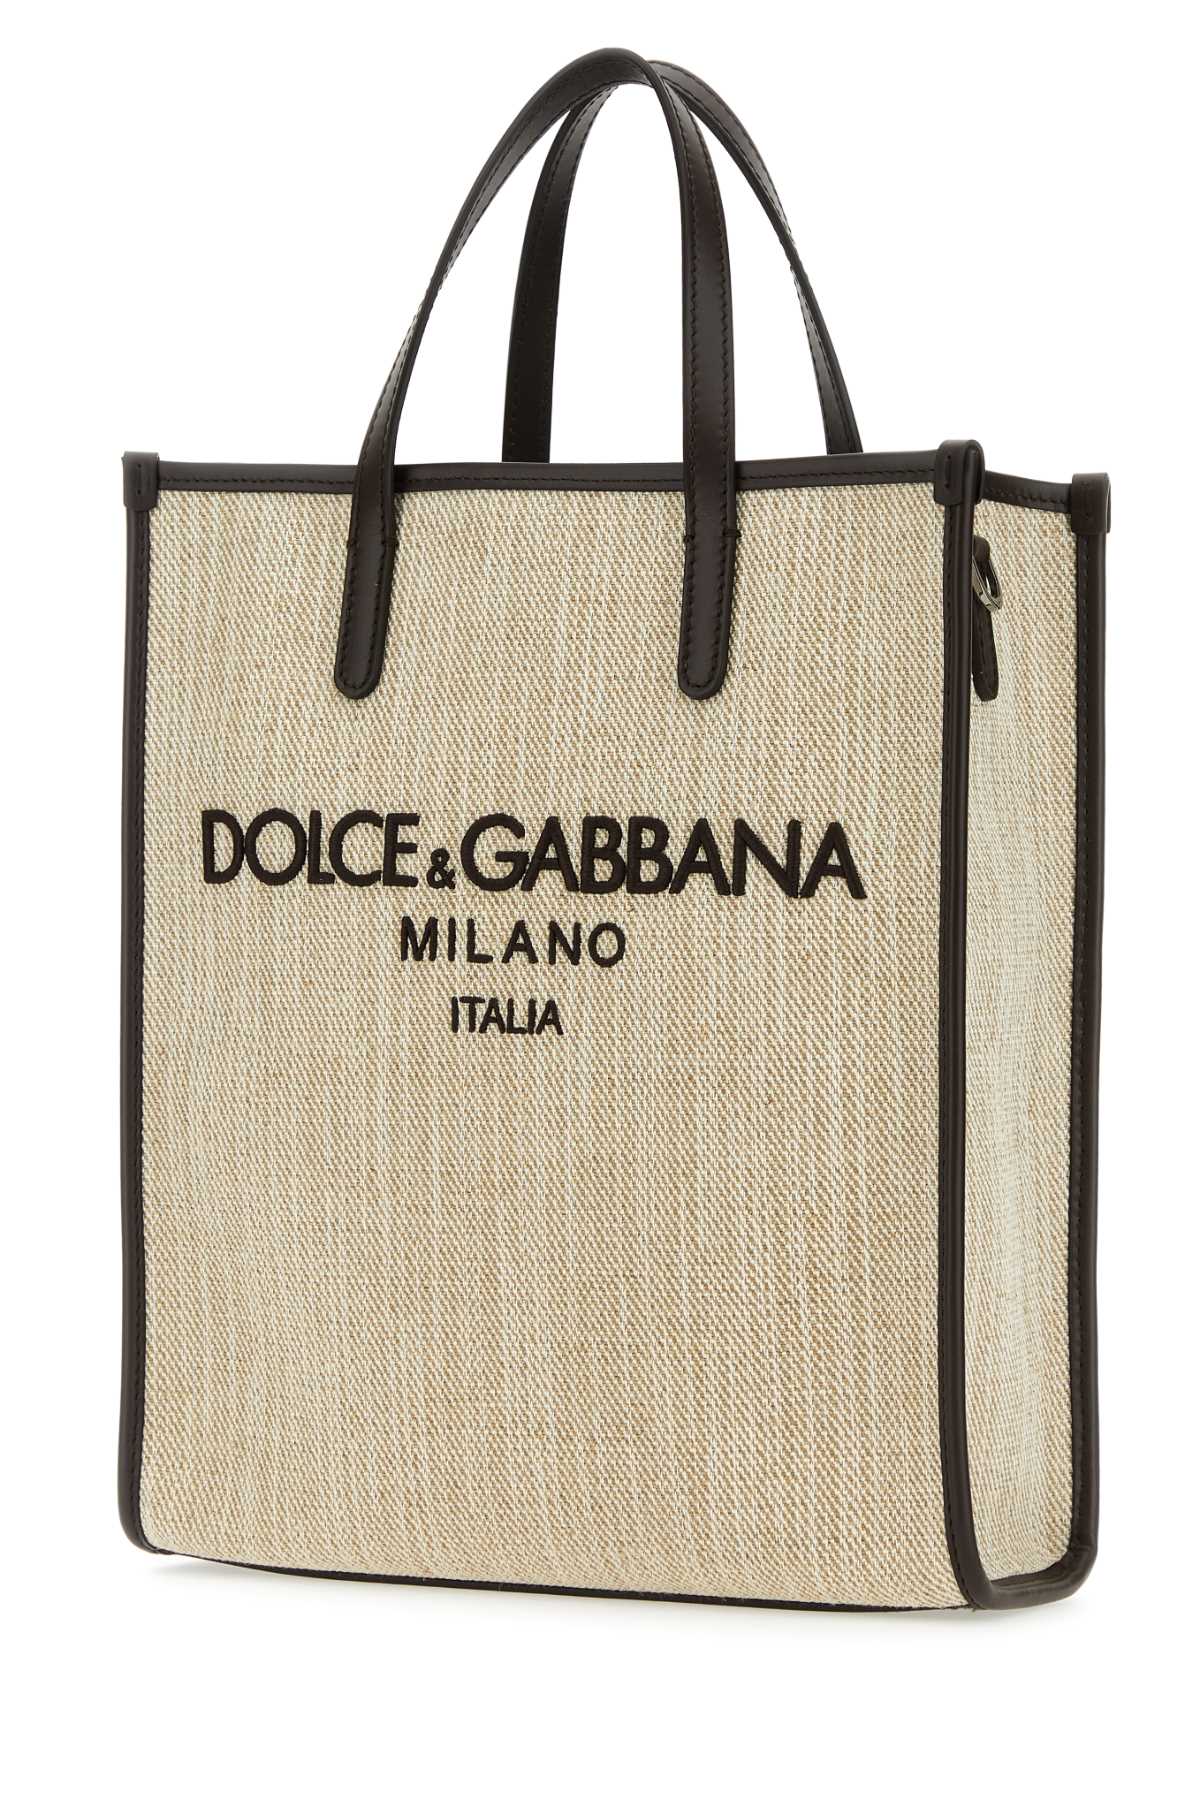 Dolce & Gabbana Sand Canvas Small Shopping Bag In Sabbia2